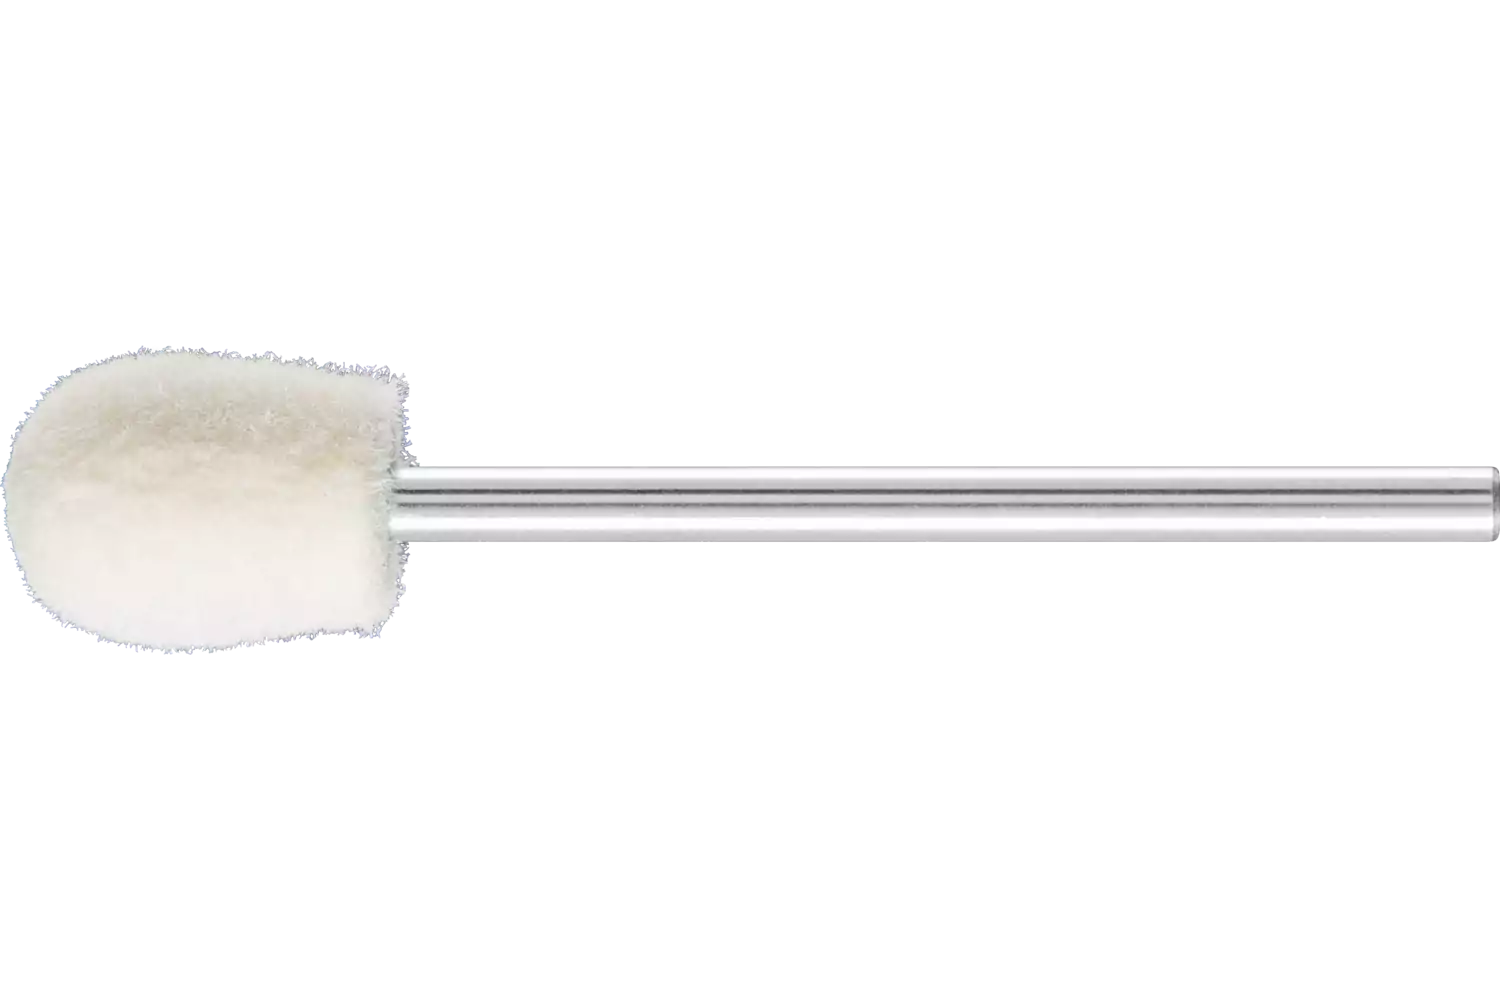 Feltri con gambo per lucidare medio-duri forma a goccia Ø 8x12 mm, gambo Ø 2,35 mm 1